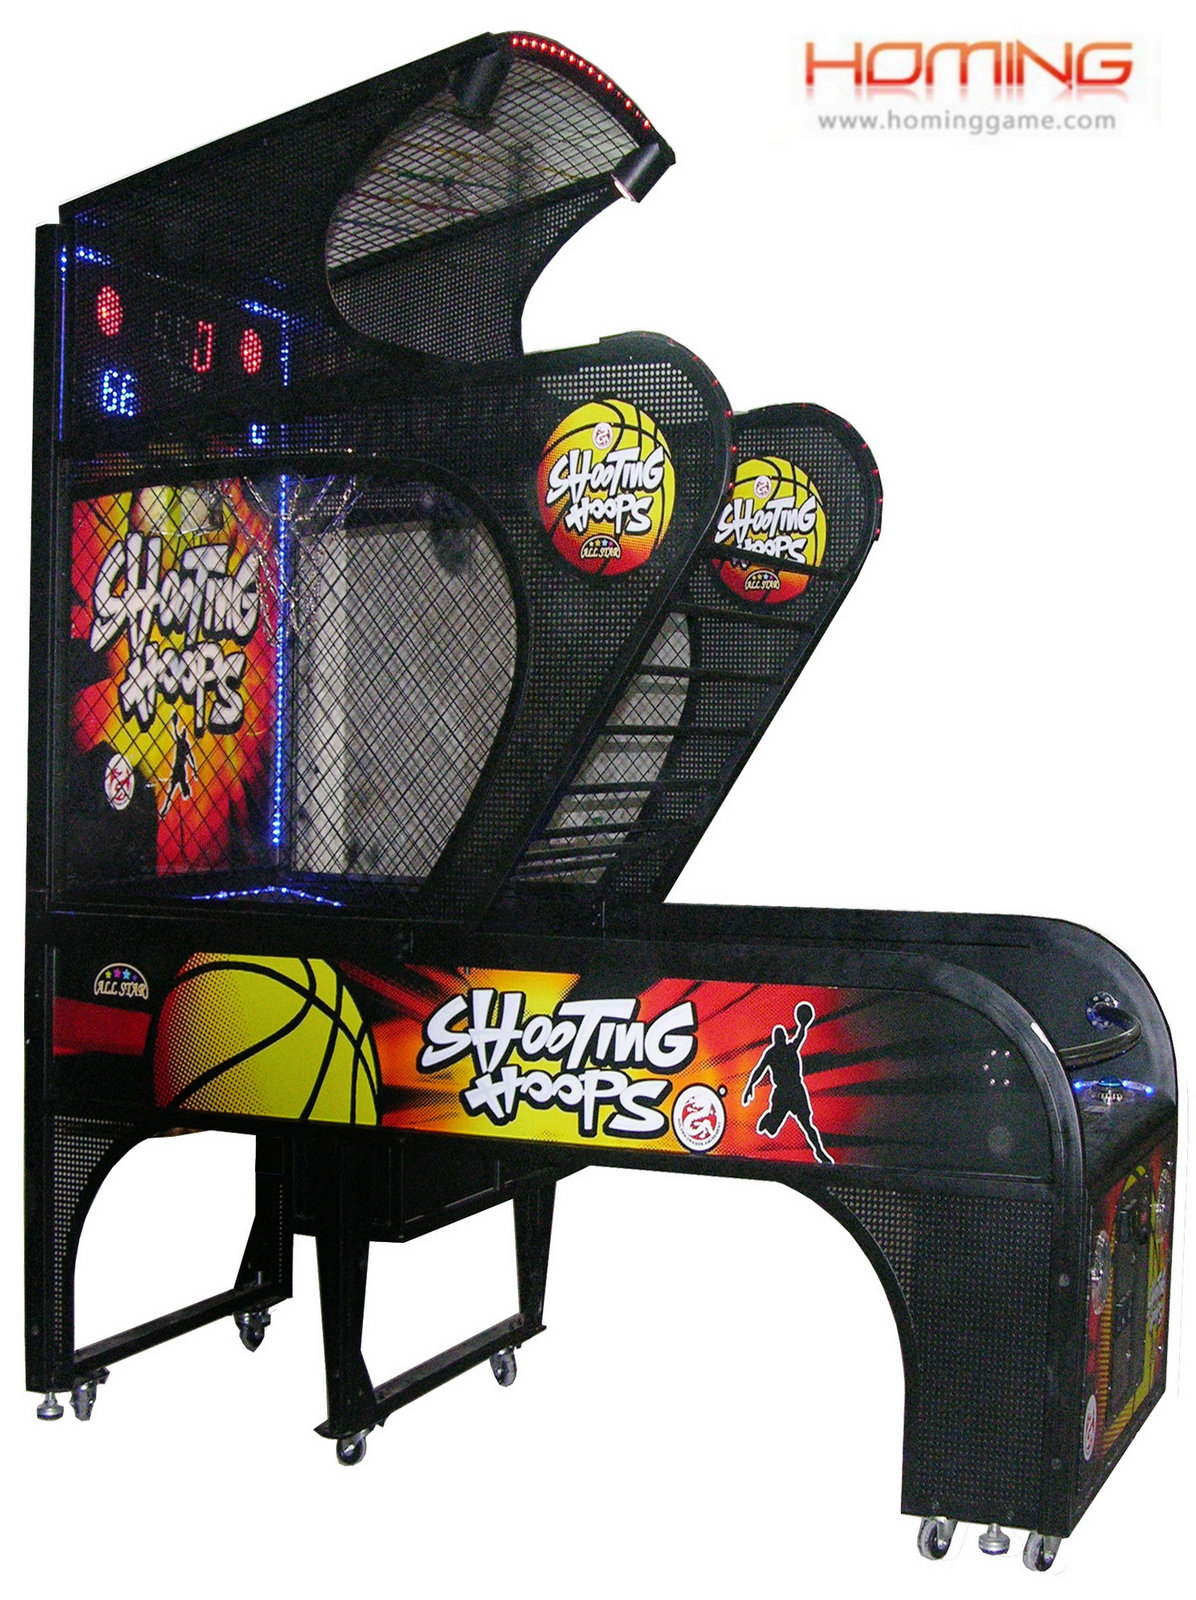 疯狂篮球机,篮球游戏机,彩票篮球机